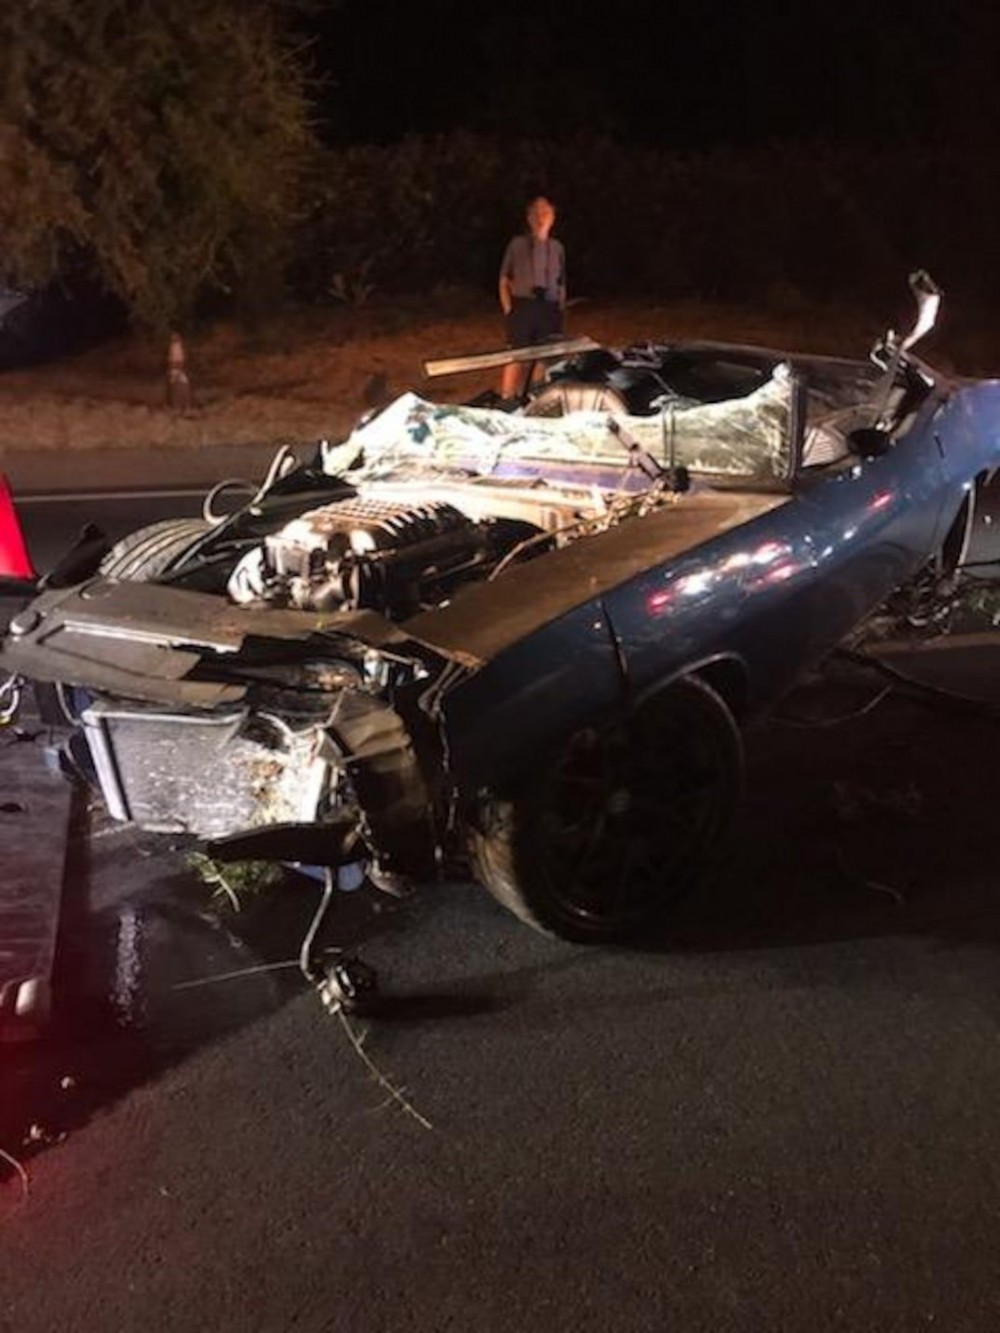 Nam diễn viên Fast & Furious: Hobbs & Shaw gặp tai nạn xe nghiêm trọng - Ảnh 1.